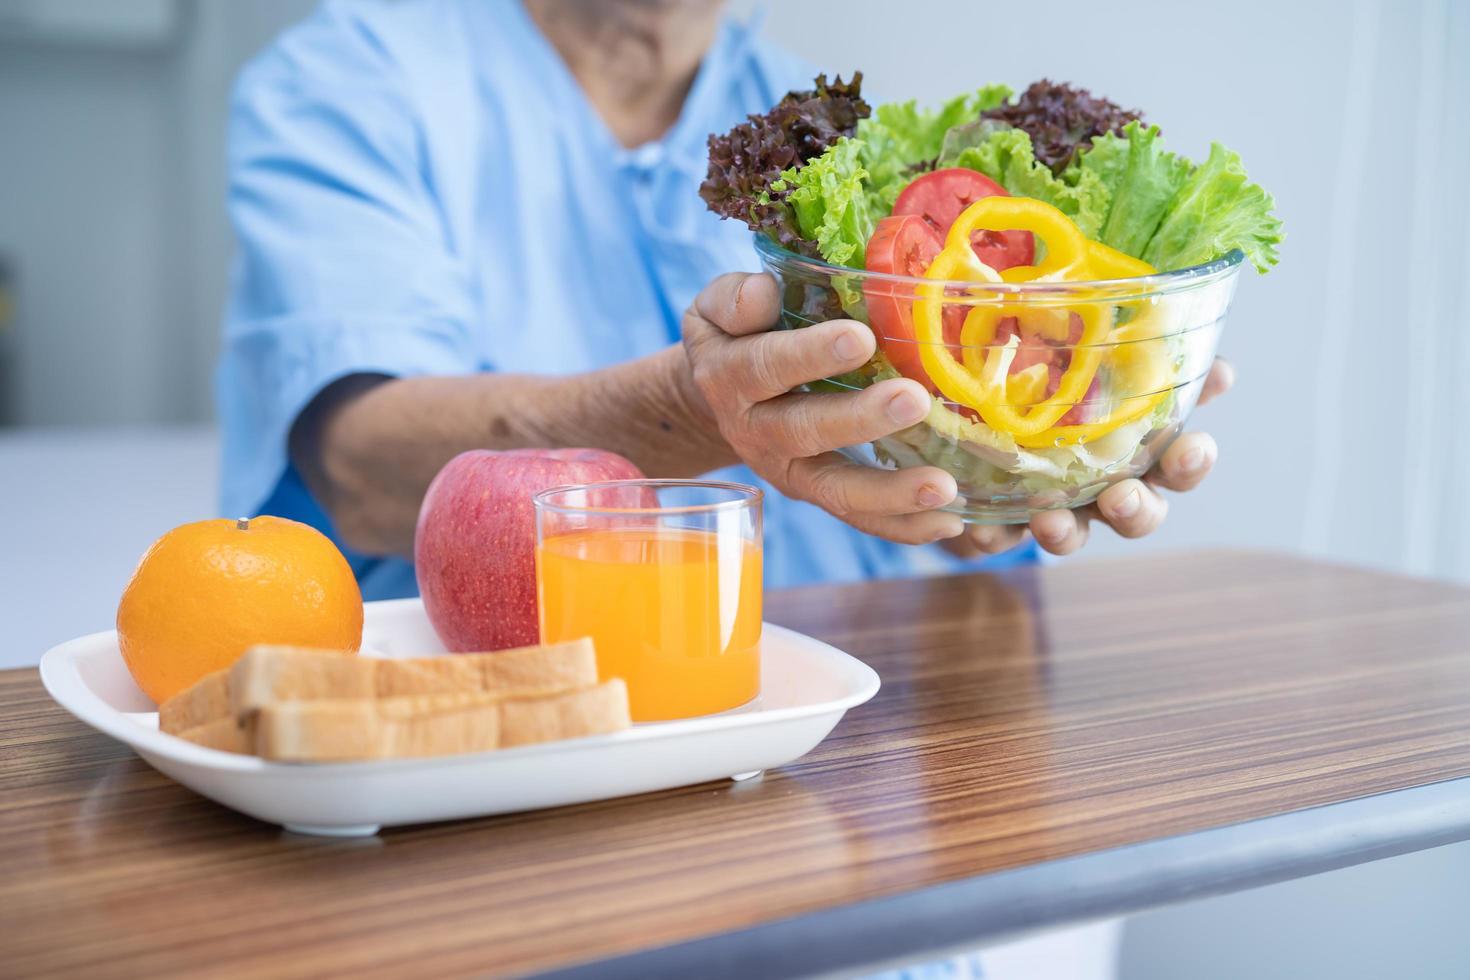 asiatico anziano o anziana signora anziana paziente che mangia colazione vegetale cibo sano con speranza e felice mentre è seduto e affamato sul letto in ospedale. foto